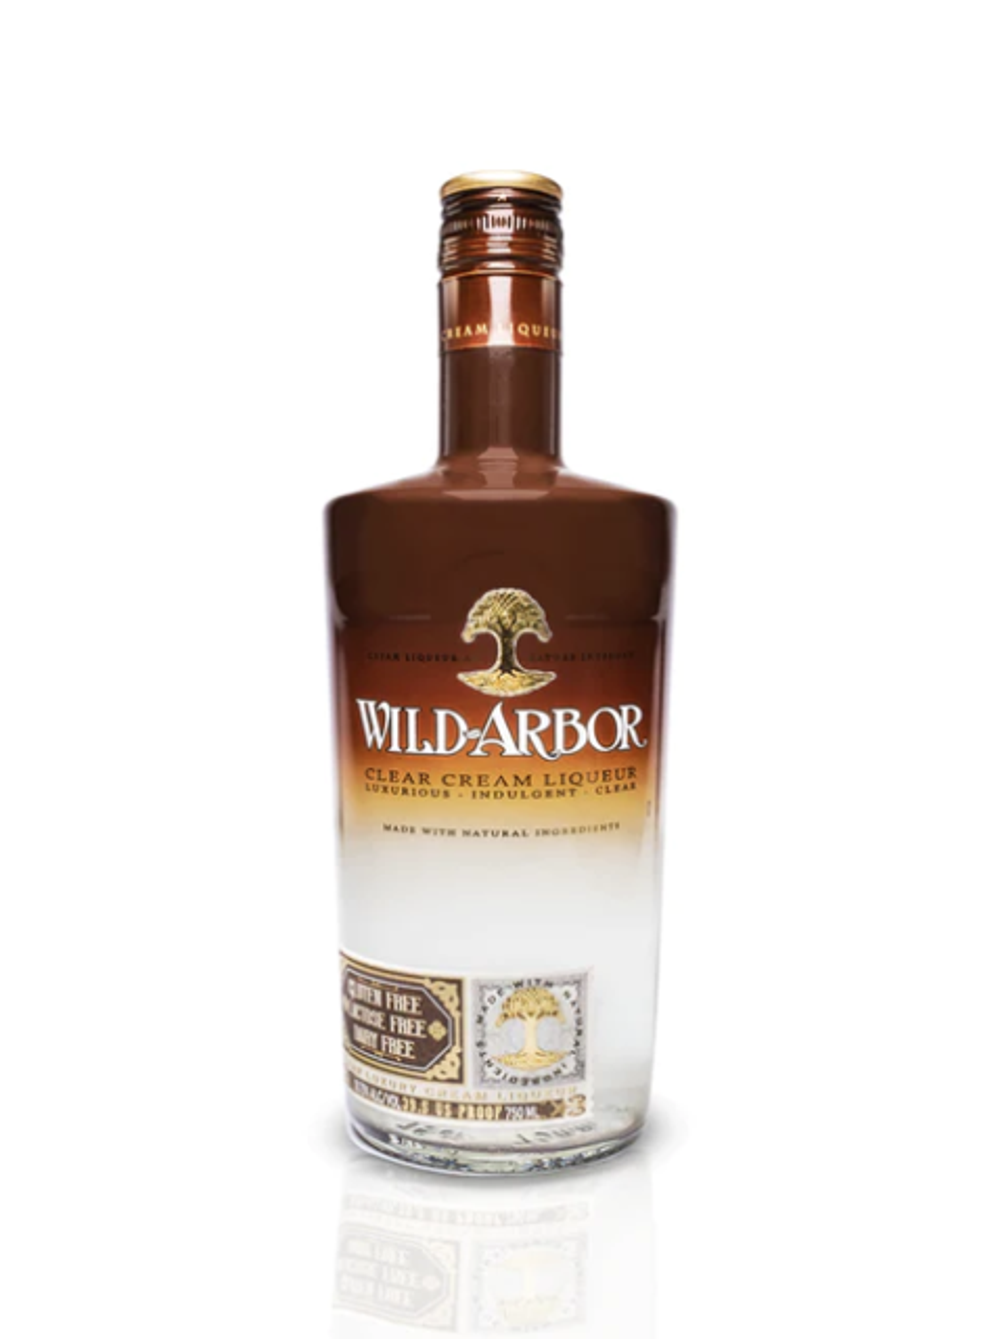 Wild Arbor Luxury Cream Liqueur 19.8% 0.7L, Spirits